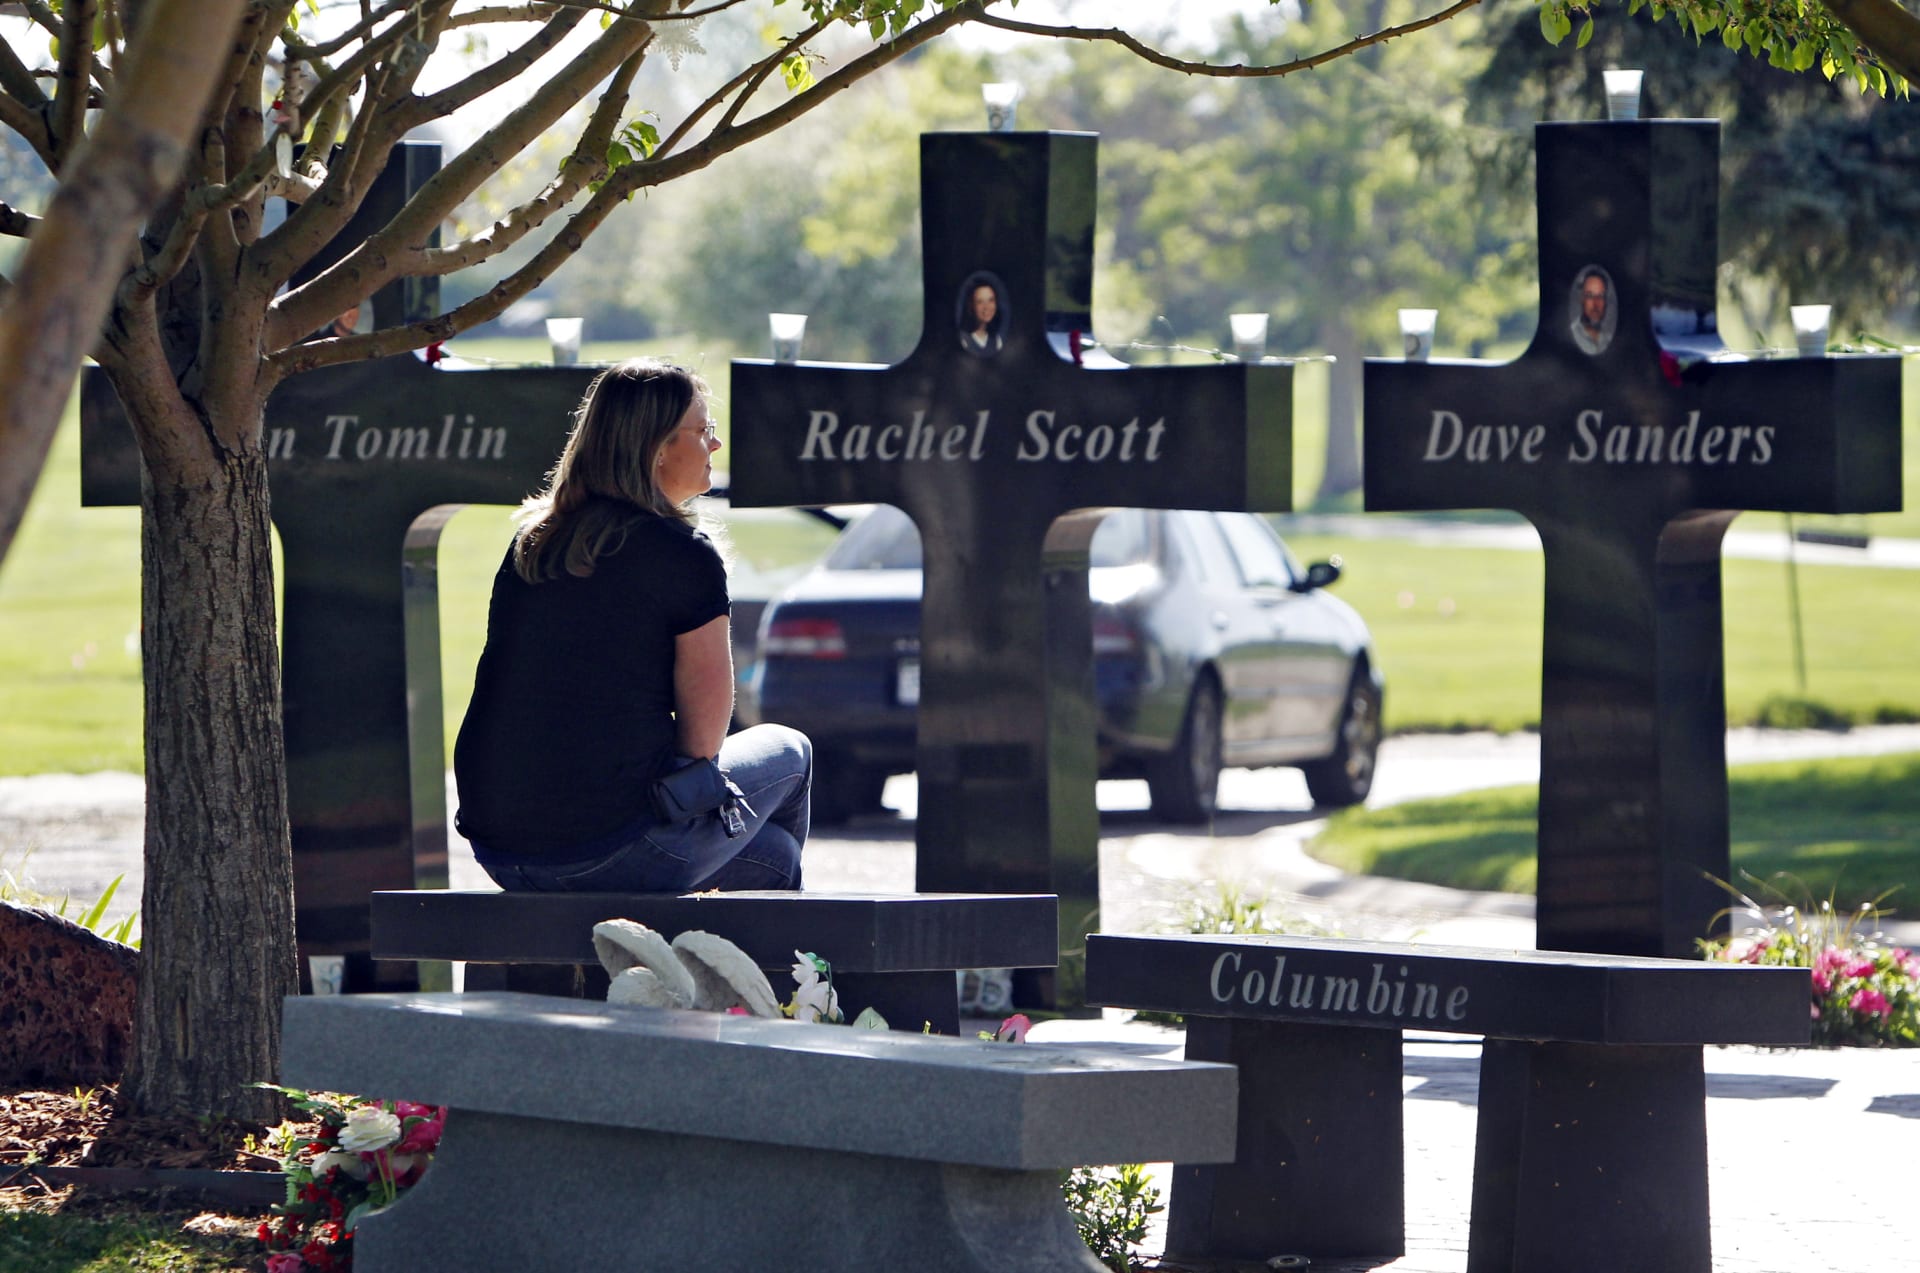 Od smrti třinácti obětí  dvanácti studentů a jednoho profesora na Columbine, uplynulo 25 let.